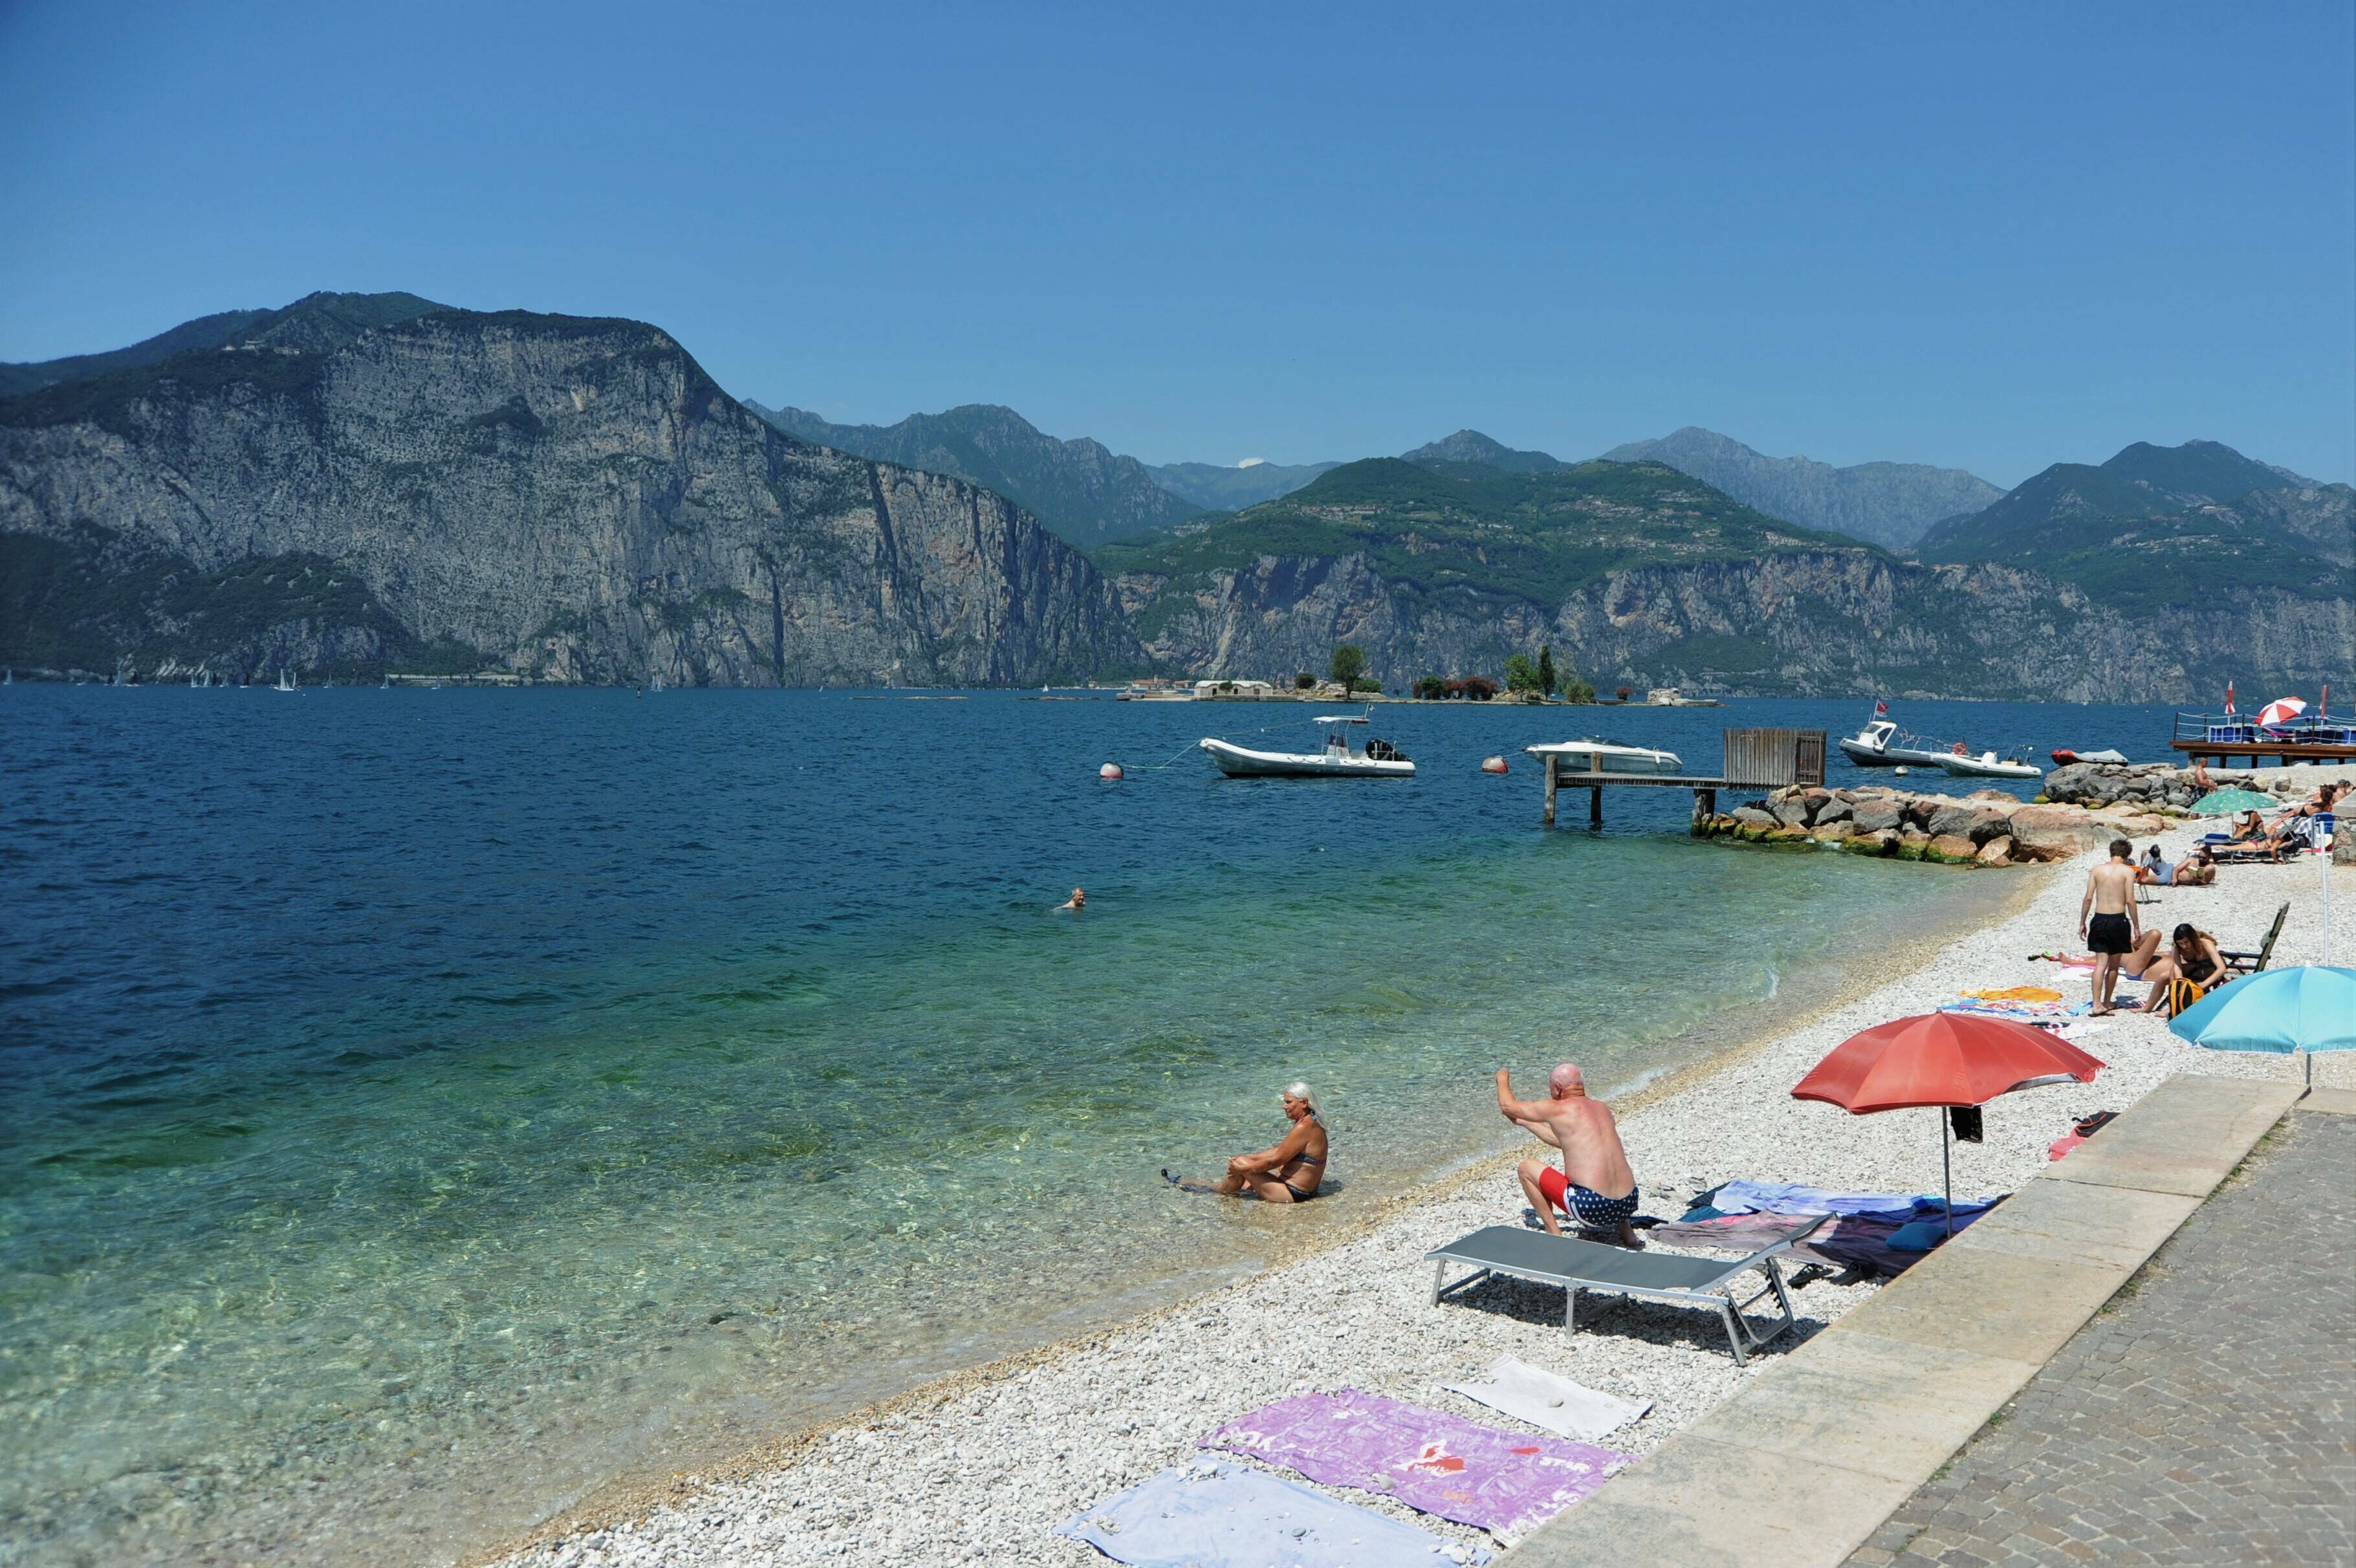 Nivelul de apă foarte scăzut al lacului Garda, Italia, șochează turiștii. „Apa nu mai era acolo” | GALERIE FOTO - Imaginea 2